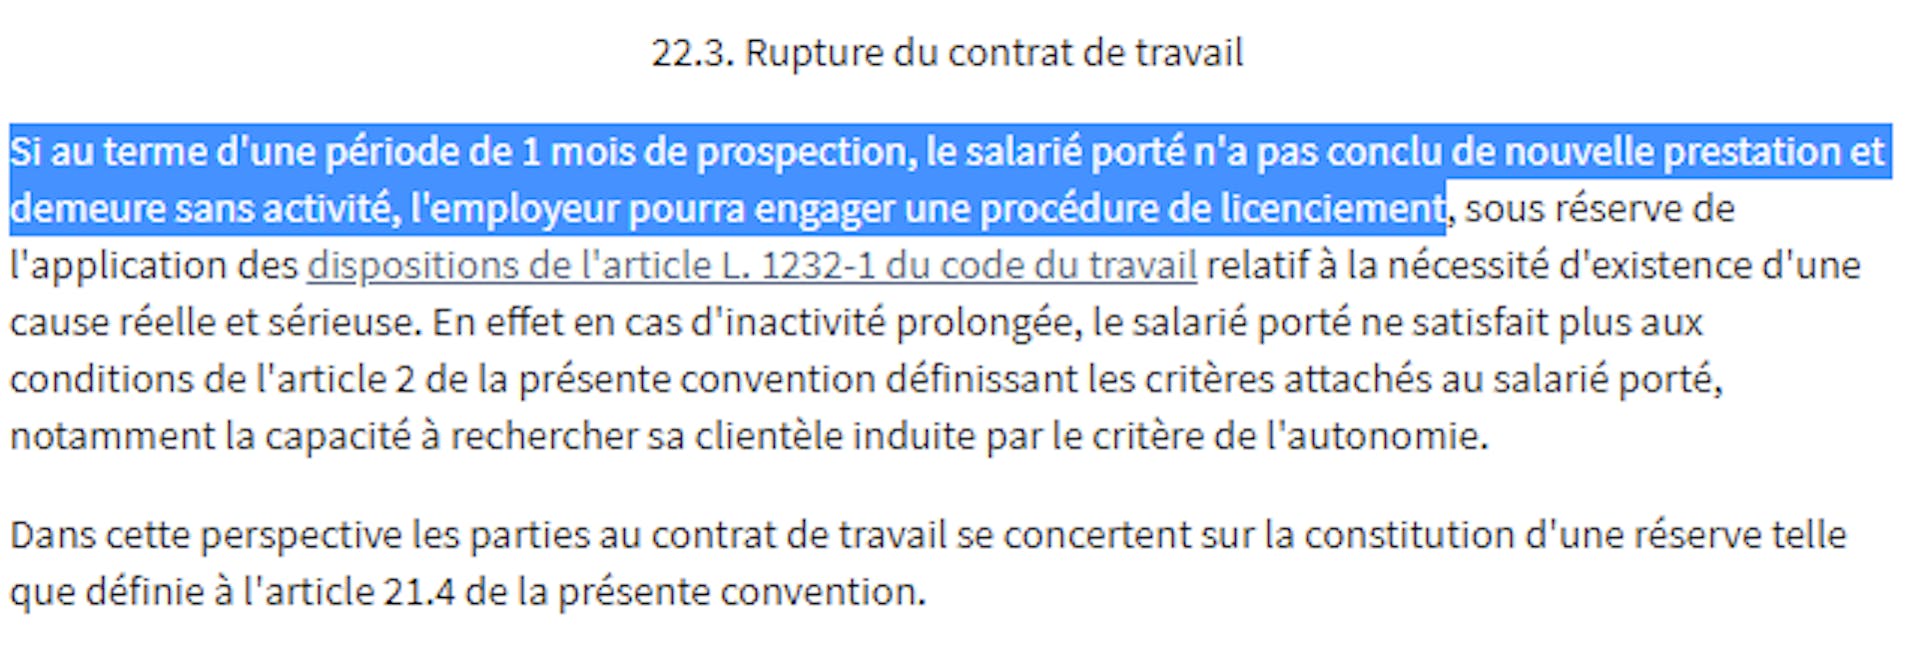 Un extrait de la convention collective de portage salarial mentionnant les conditions de licenciement d’un salarié porté